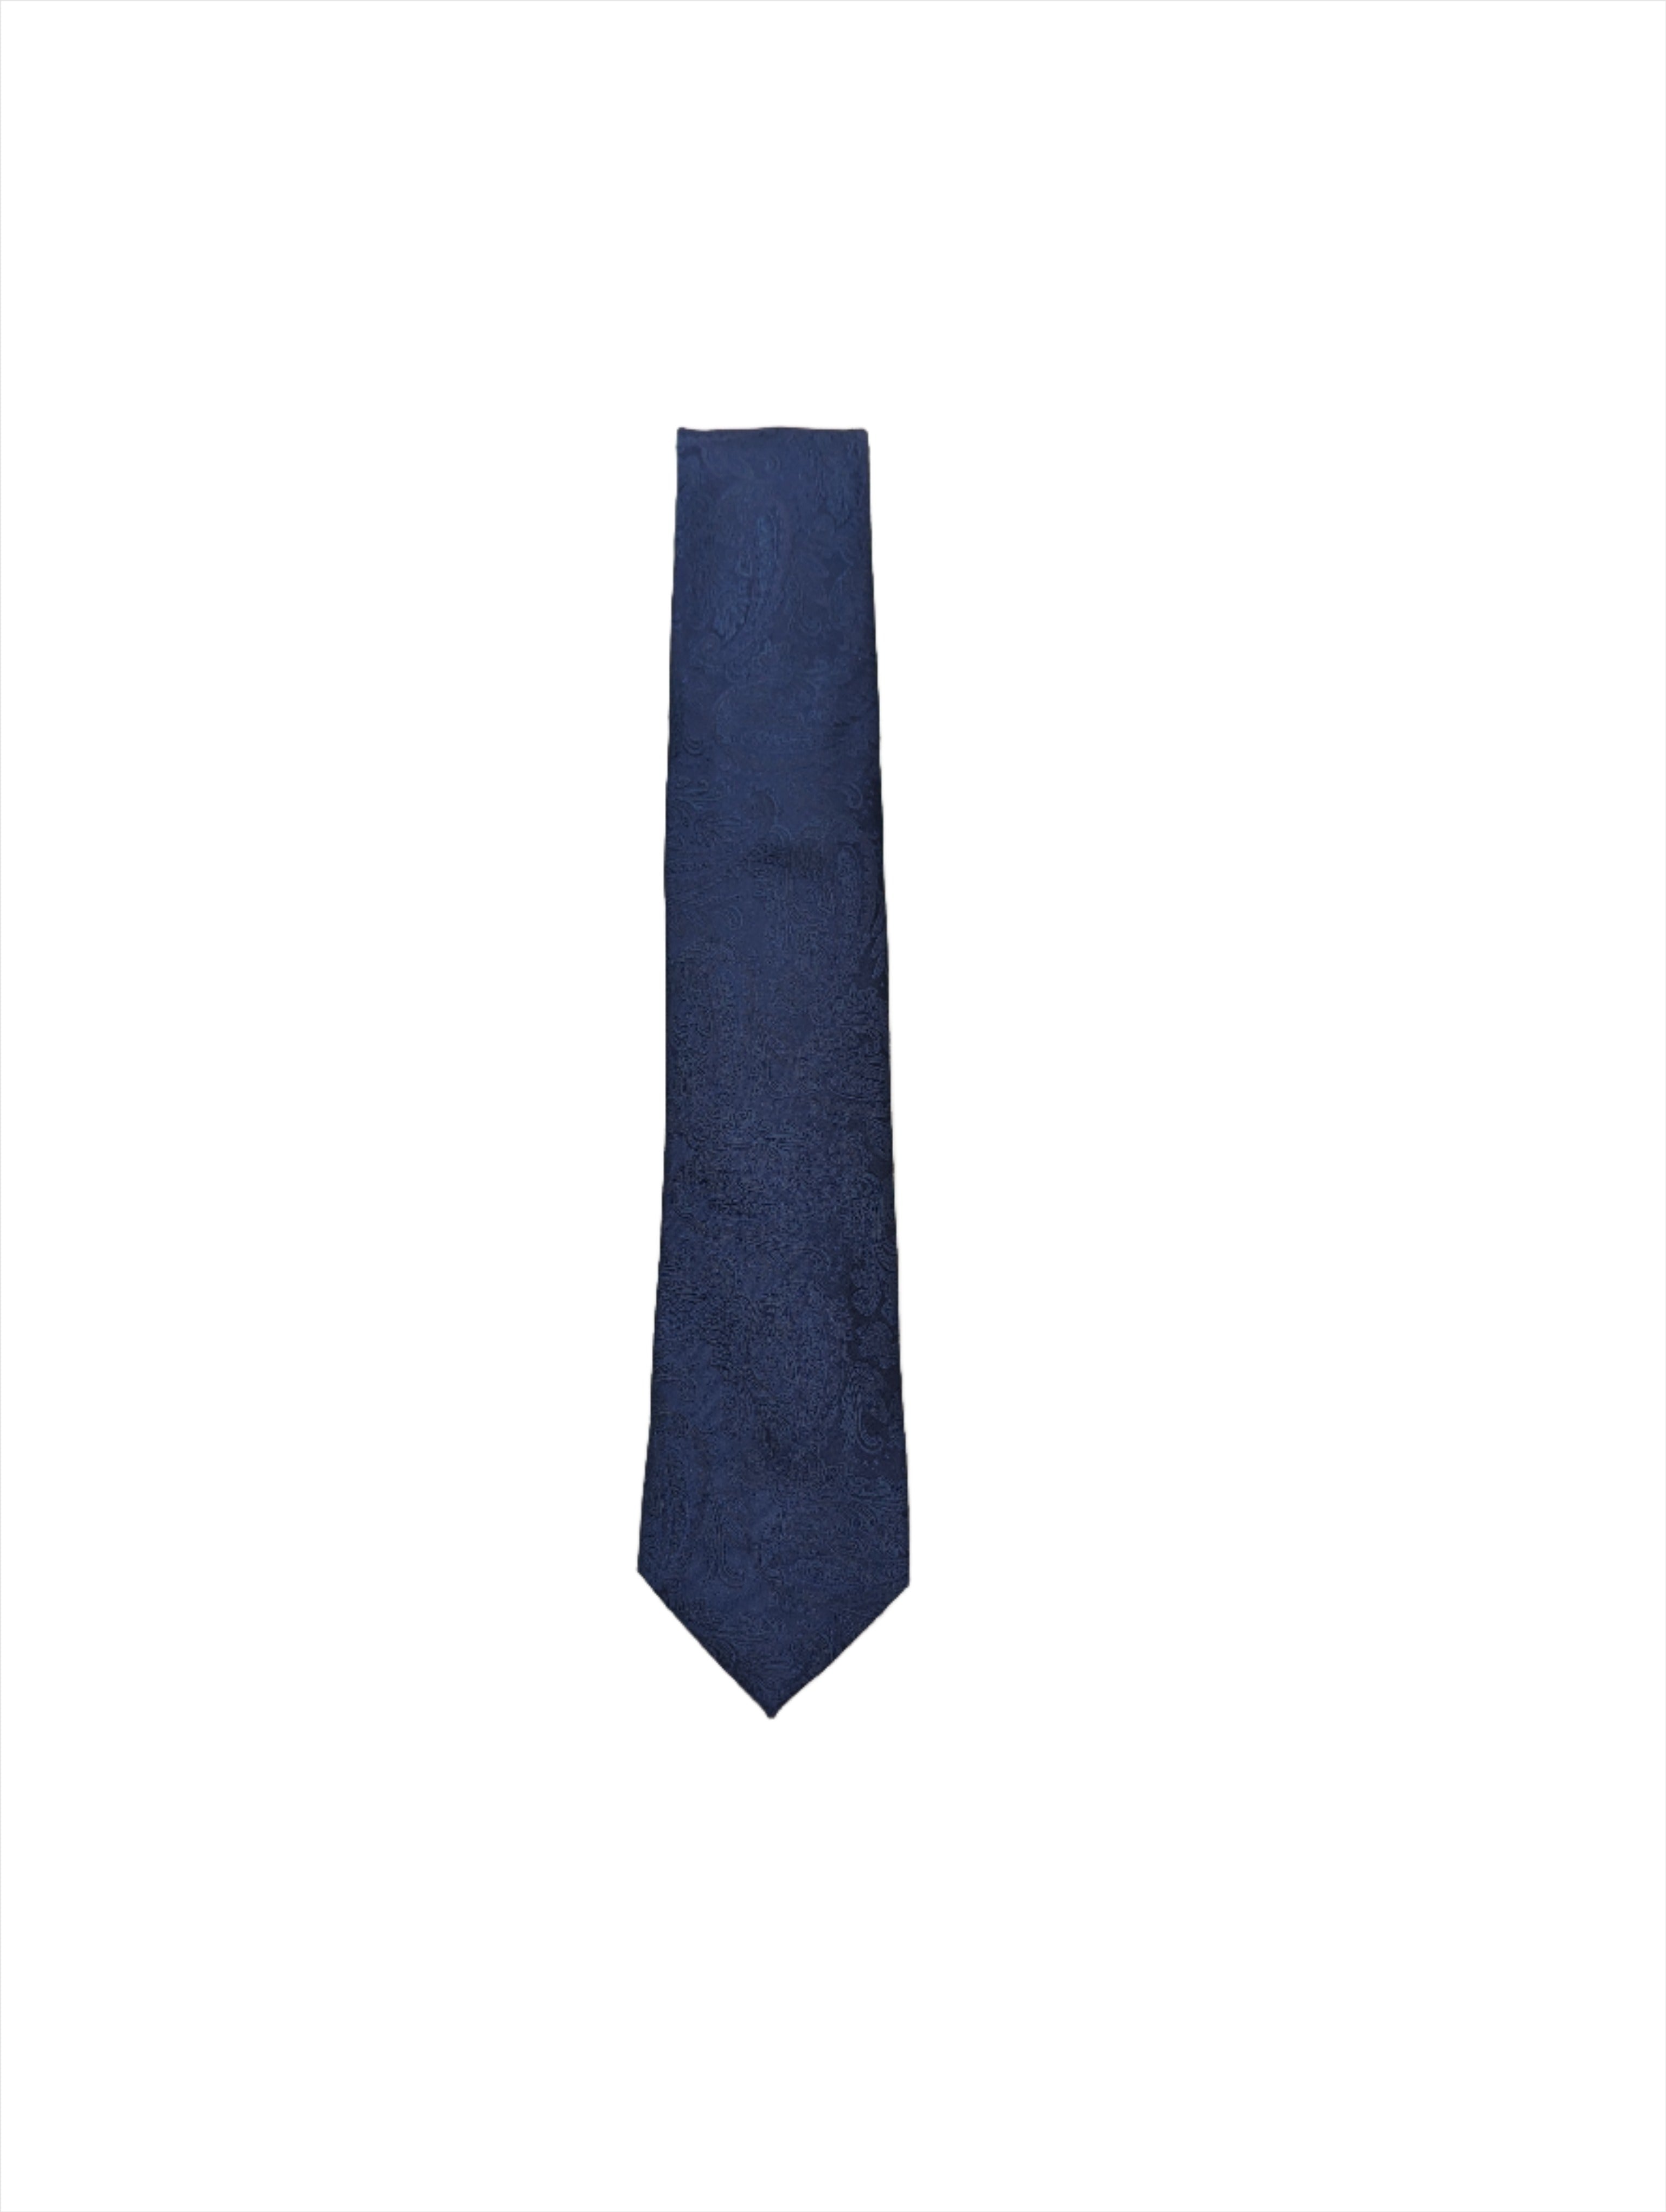 Men's Paisley Tie - Navy